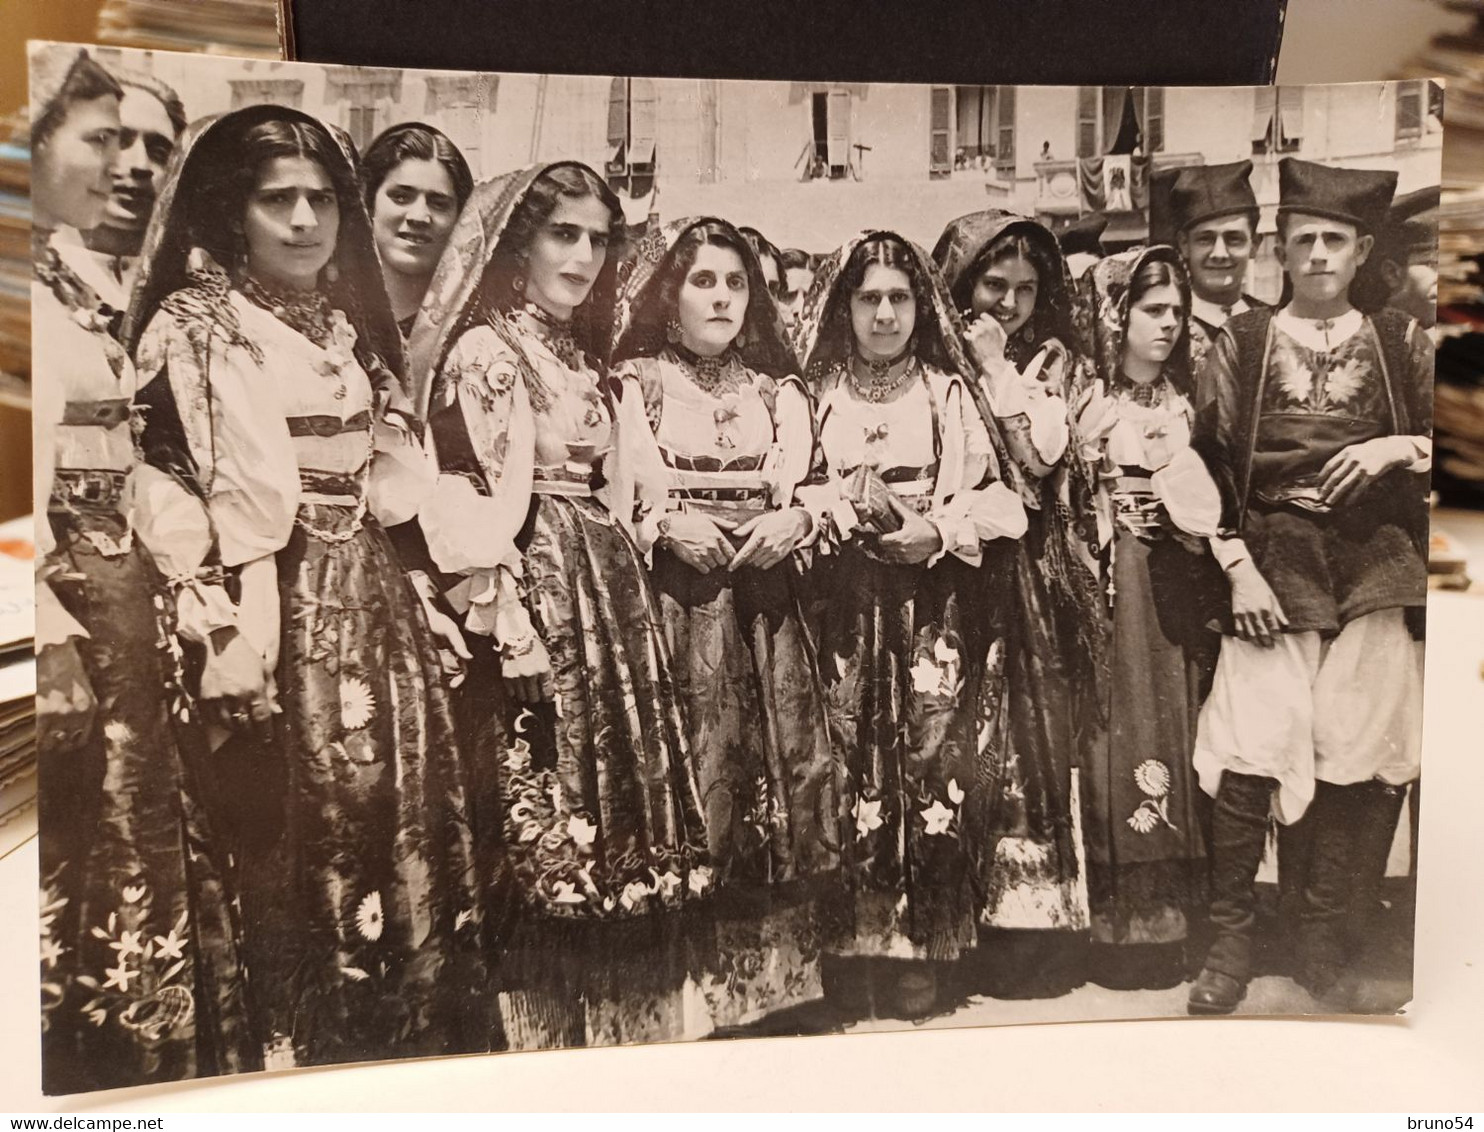 Cartolina Costumi Dorgali ,provincia Nuoro , Sardegna 1954 - Nuoro